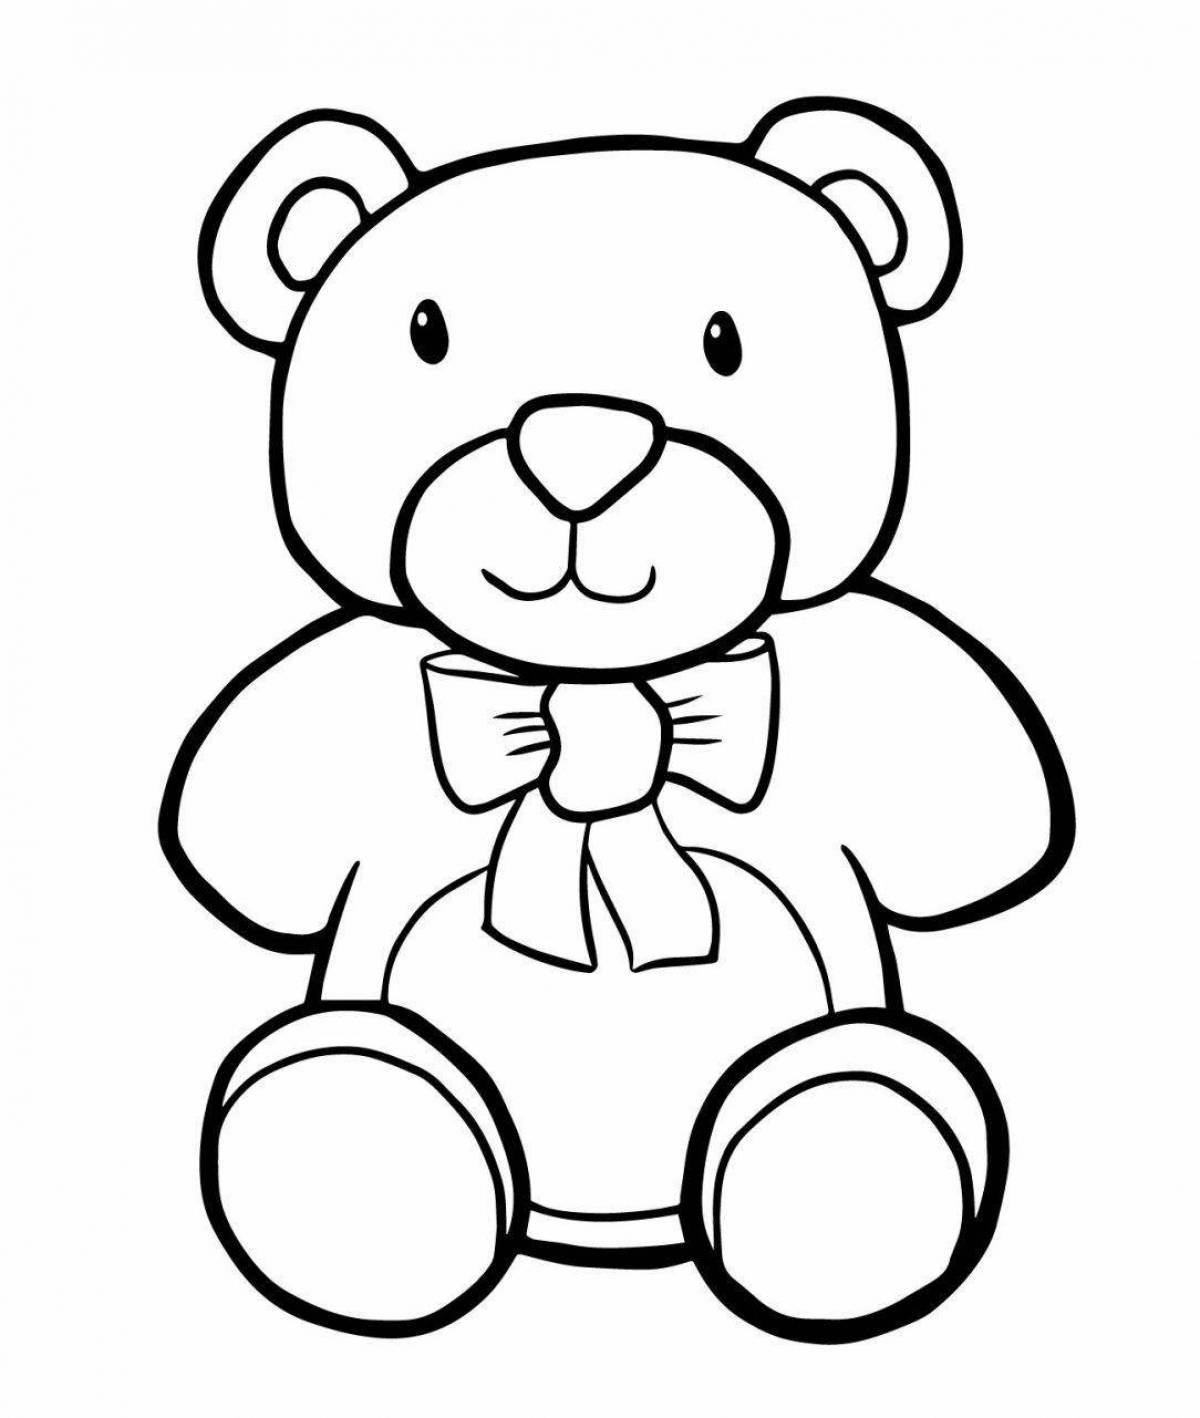 Цветная раскраска медведь для детей 4-5 лет